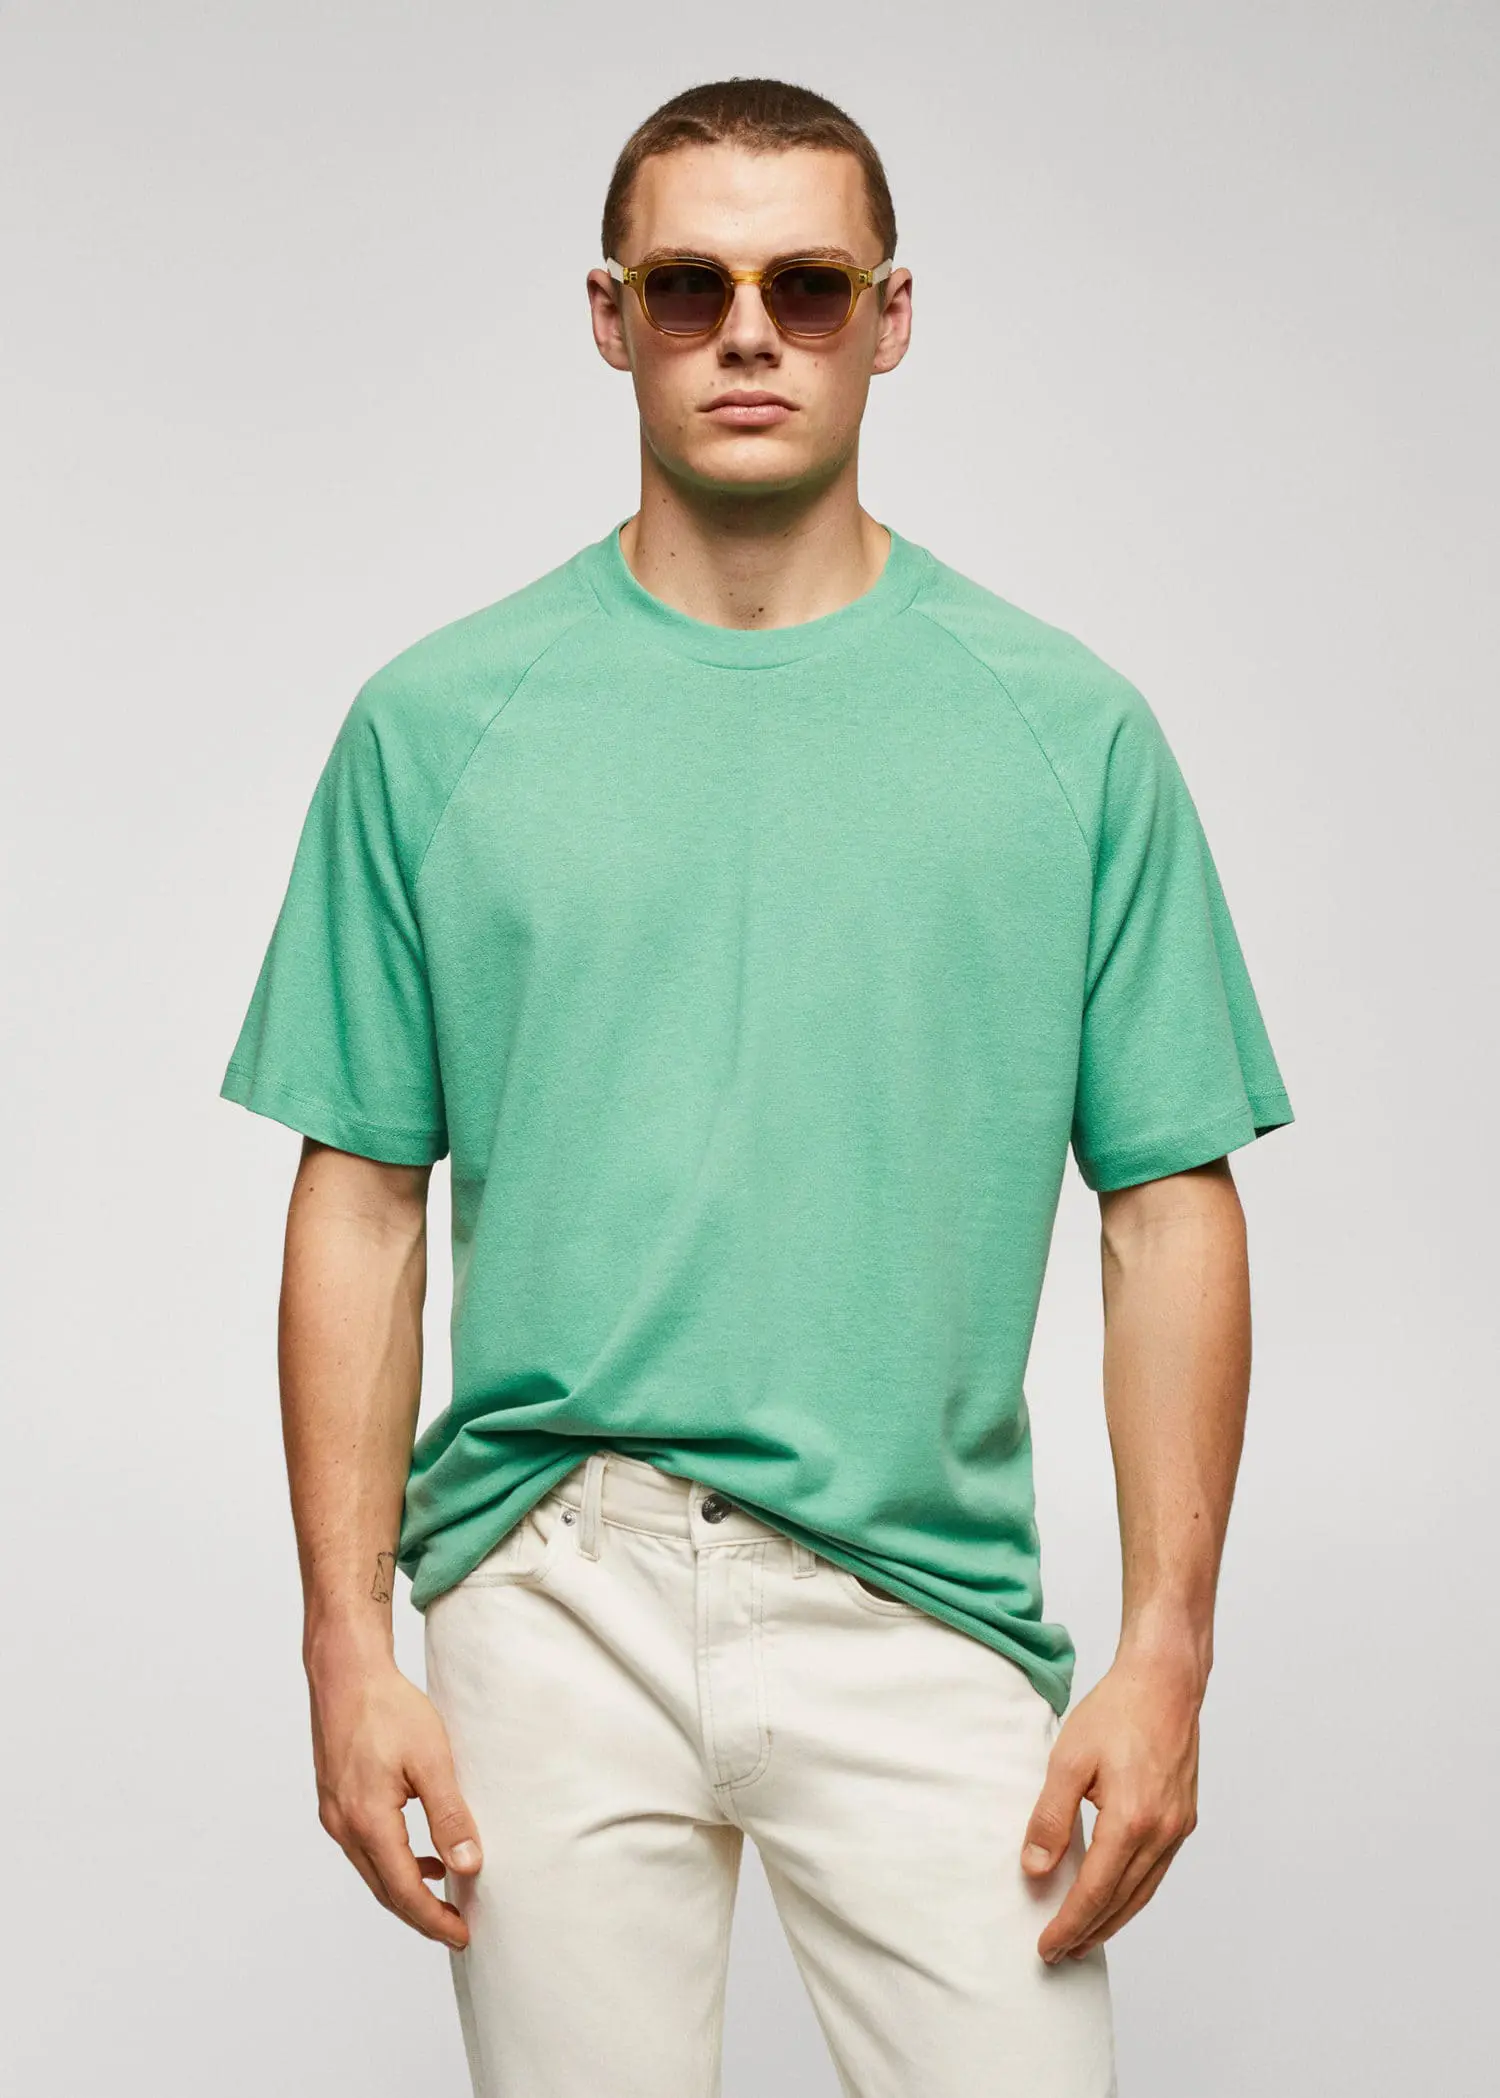 Mango T-shirt coton-lin texturé. 1